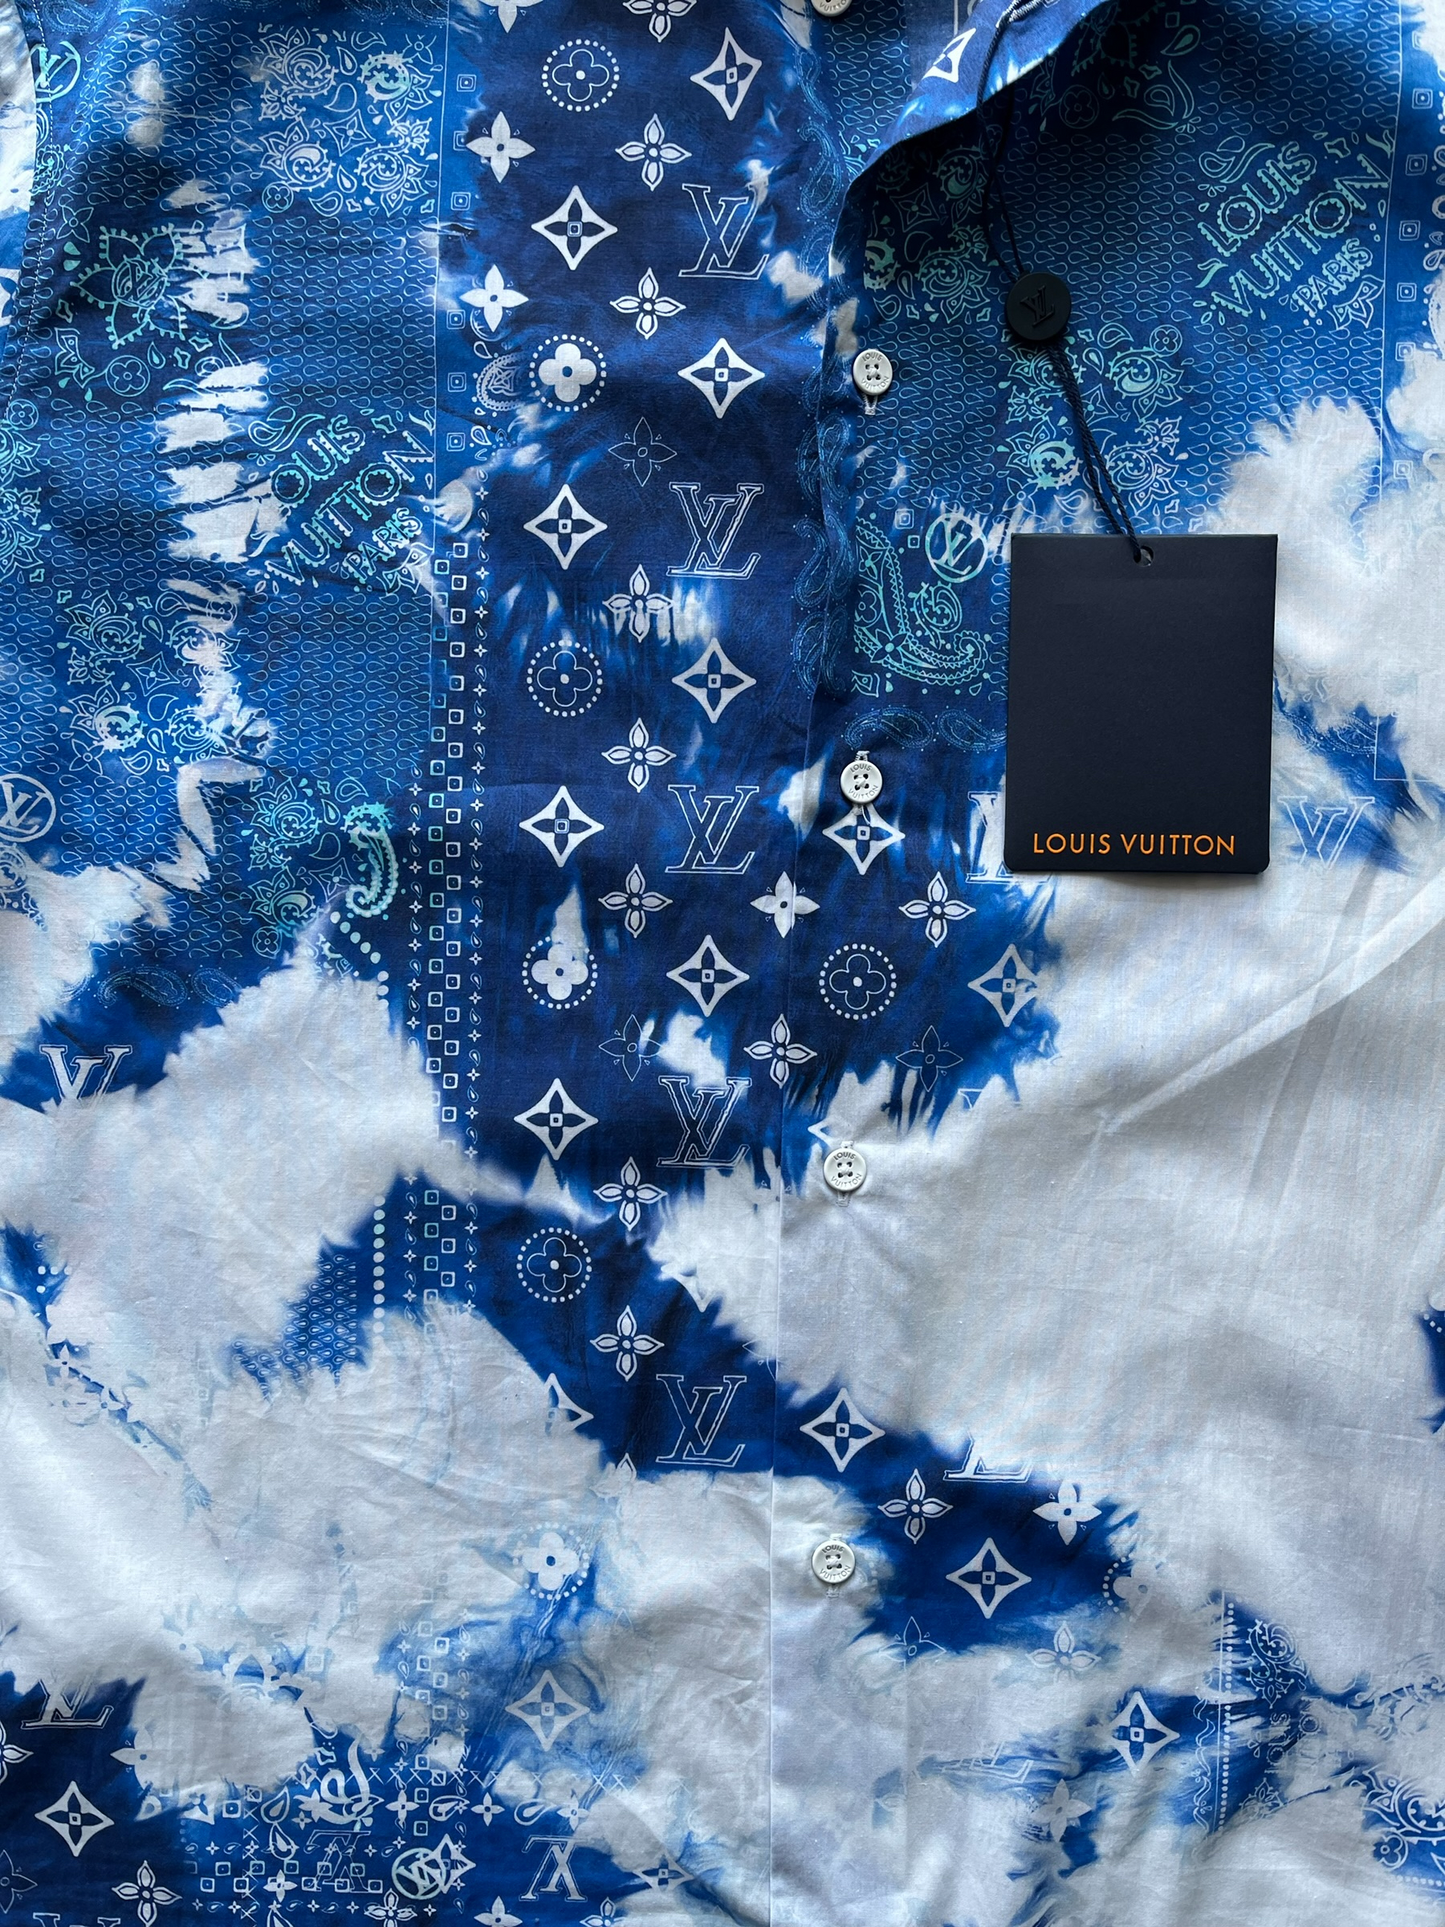 Louis Vuitton Men's XL Monogram Bandana Blue Button Down